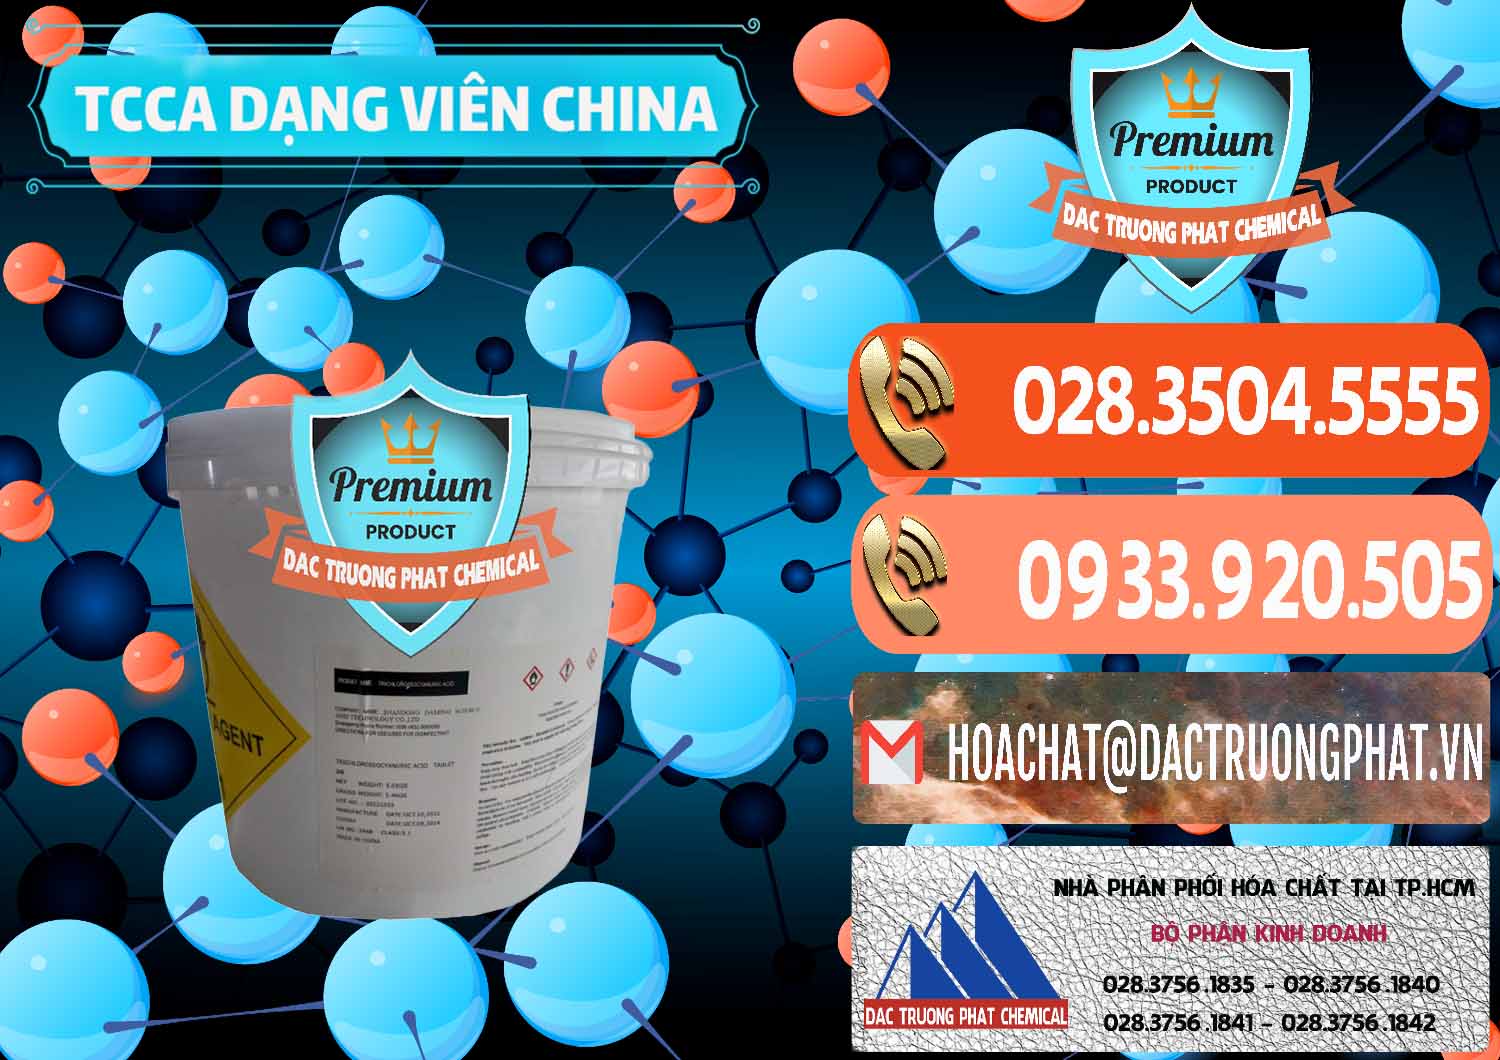 Cty bán - cung cấp TCCA - Acid Trichloroisocyanuric Dạng Viên Thùng 5kg Trung Quốc China - 0379 - Chuyên cung cấp và nhập khẩu hóa chất tại TP.HCM - hoachatmientay.com